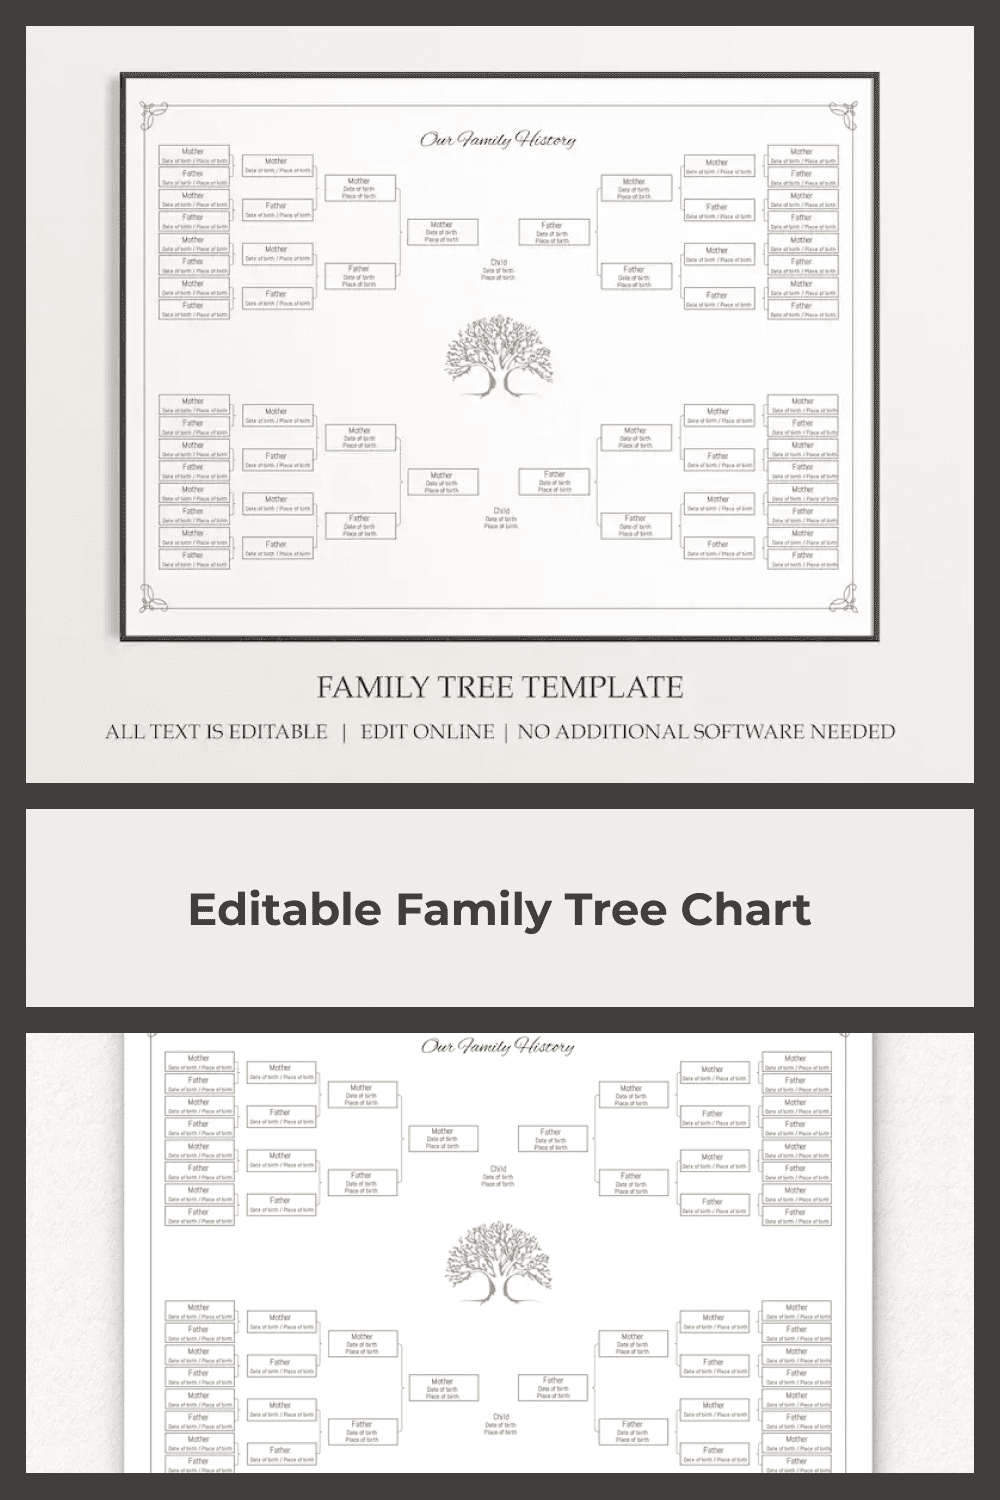 Classic family tree.